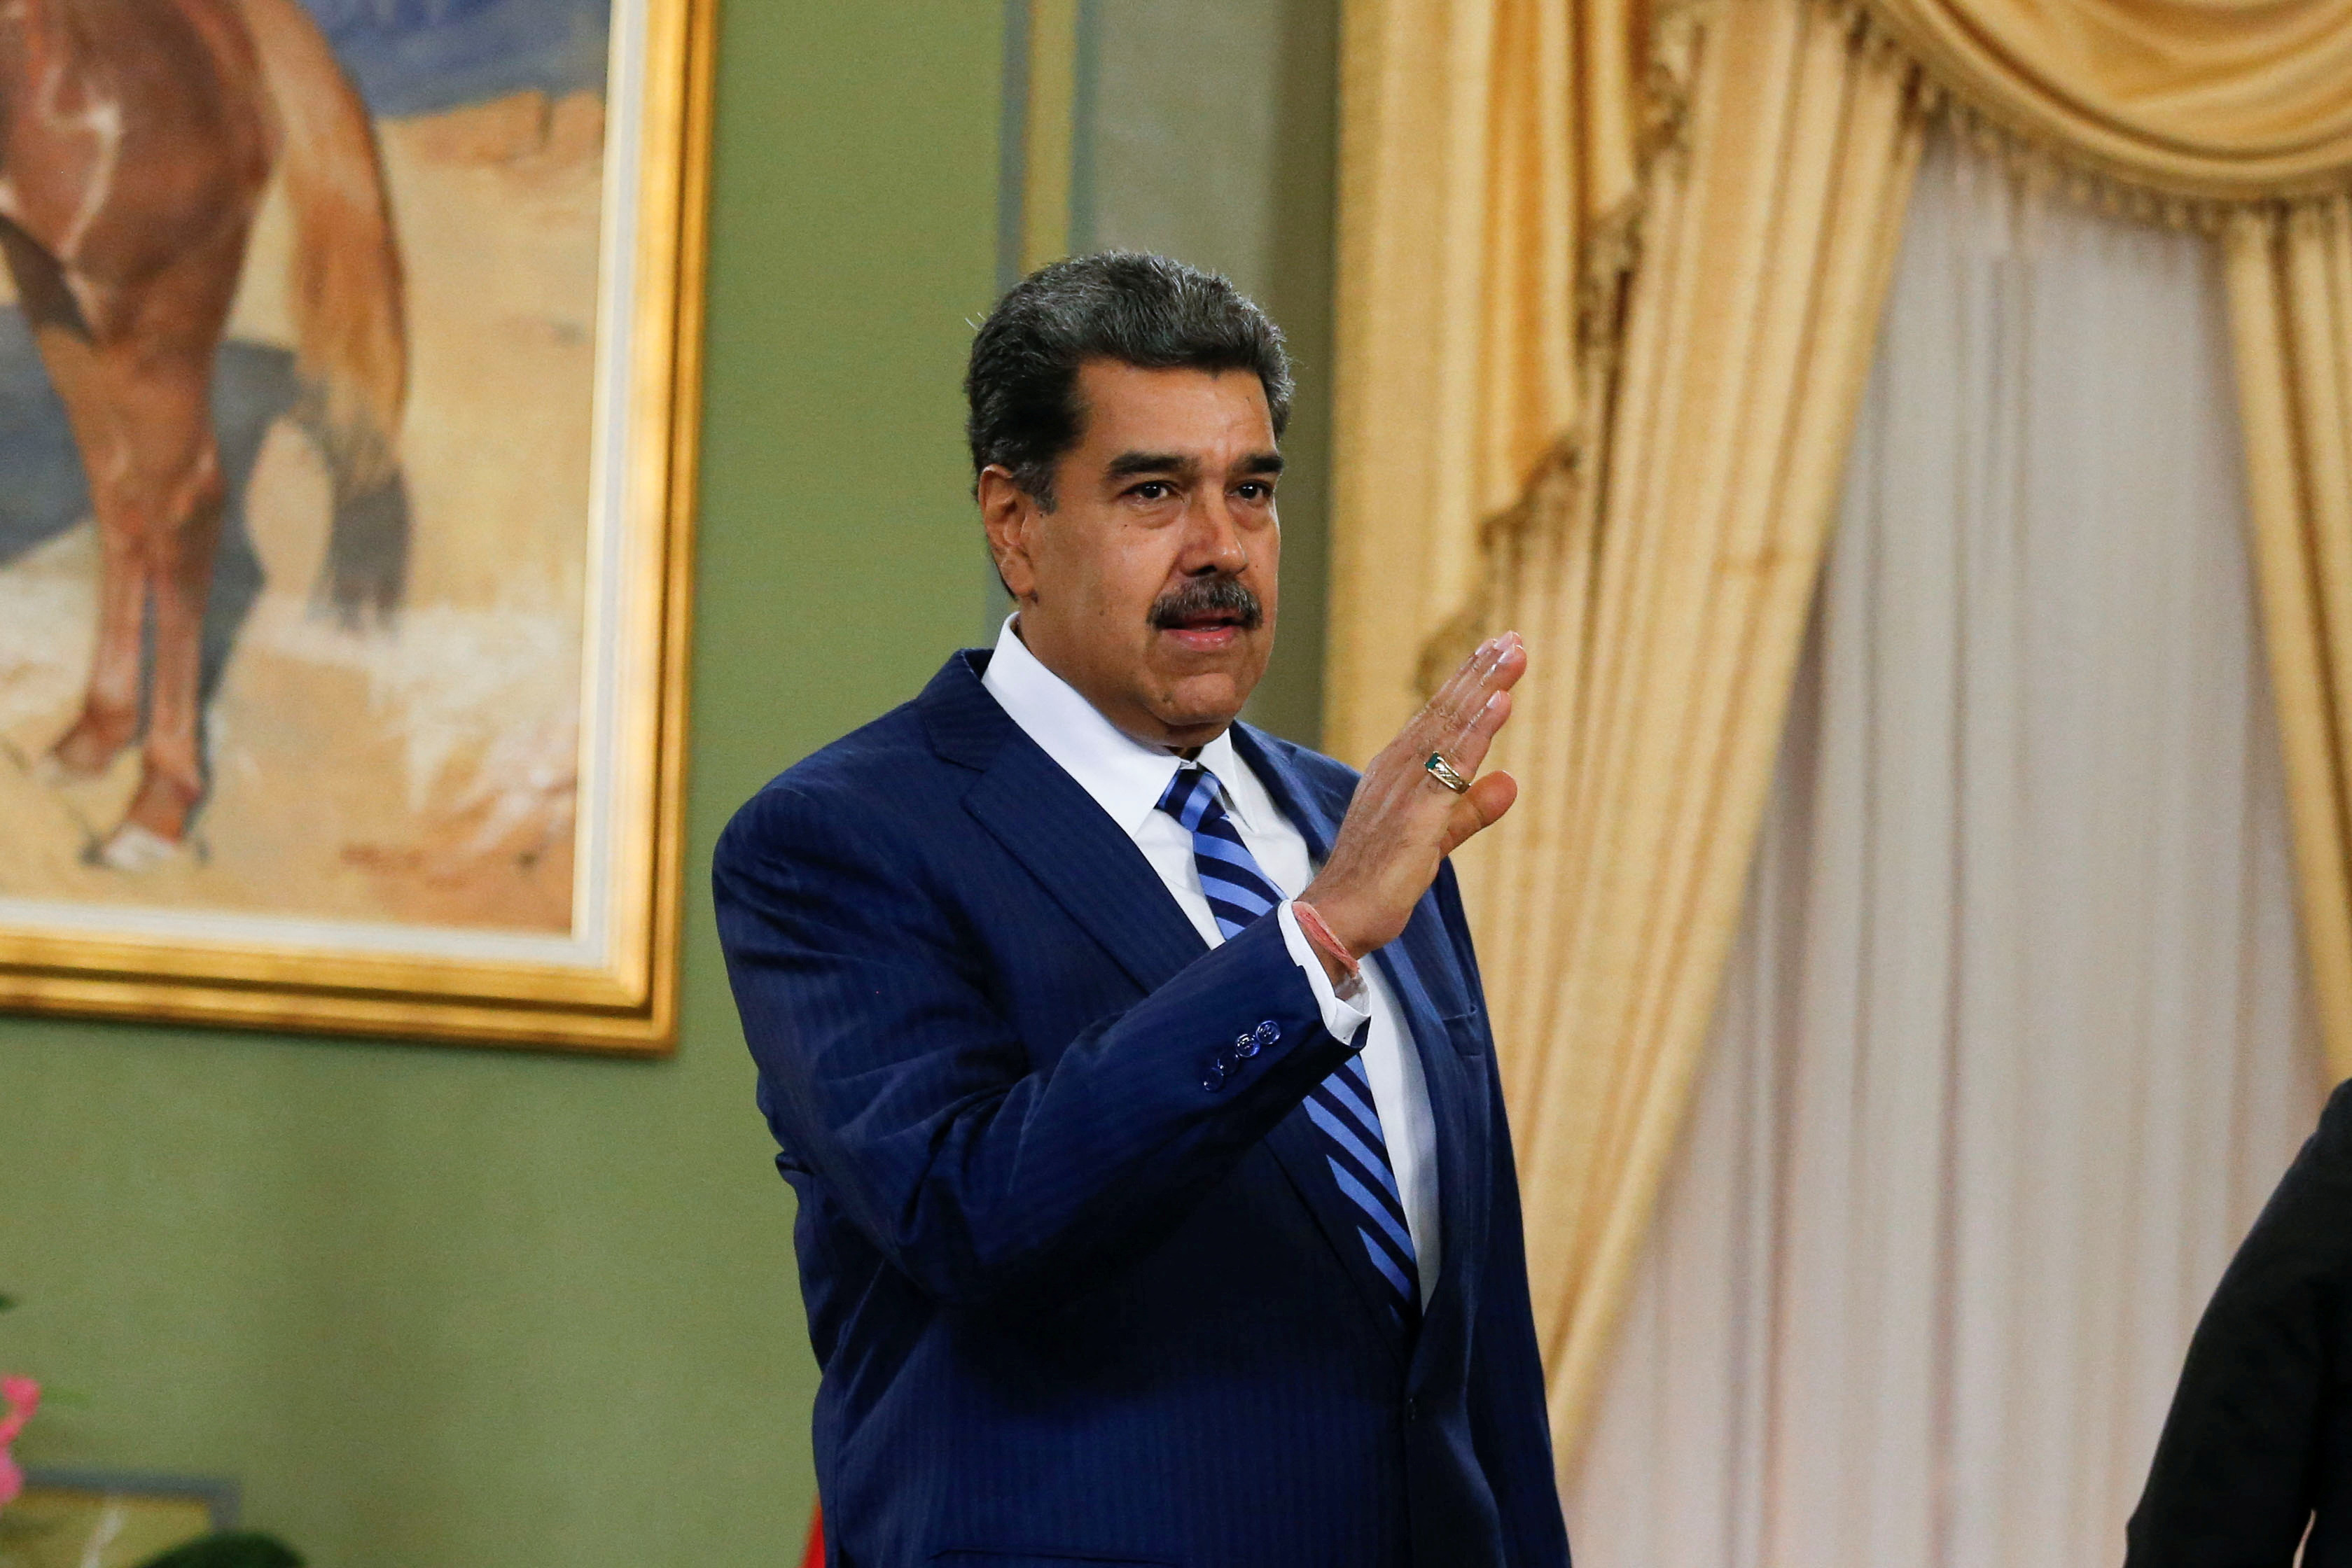 Venezuelan President Maduro and Chilean Ambassador to Venezuela Gazmuri meet in Caracas